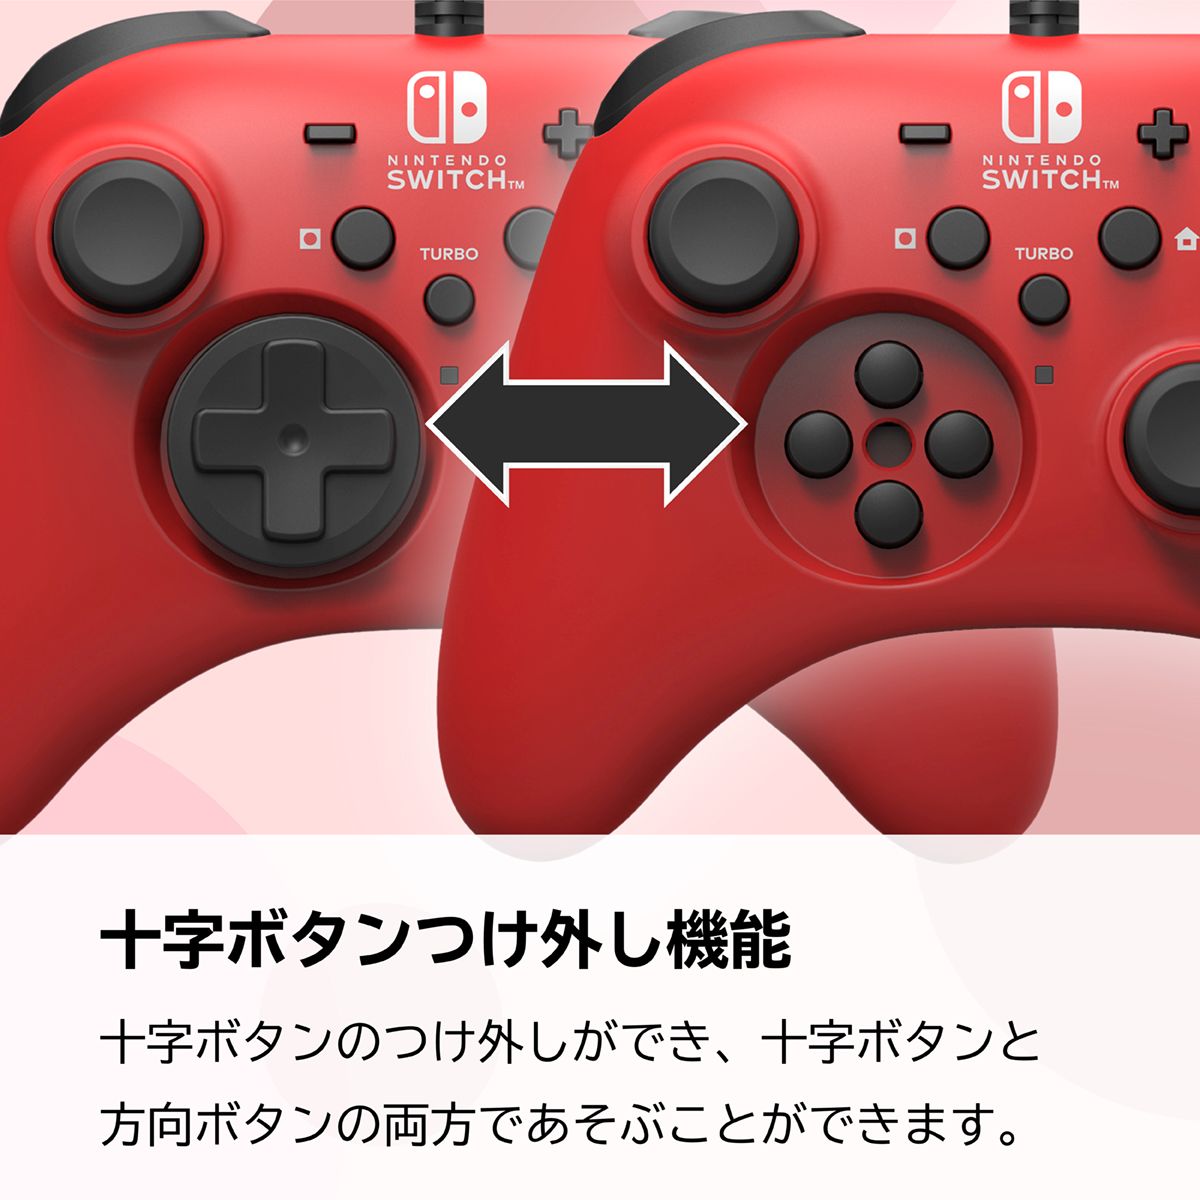 ホリパッドコントローラー for Nintendo Switch レッド ブルー-